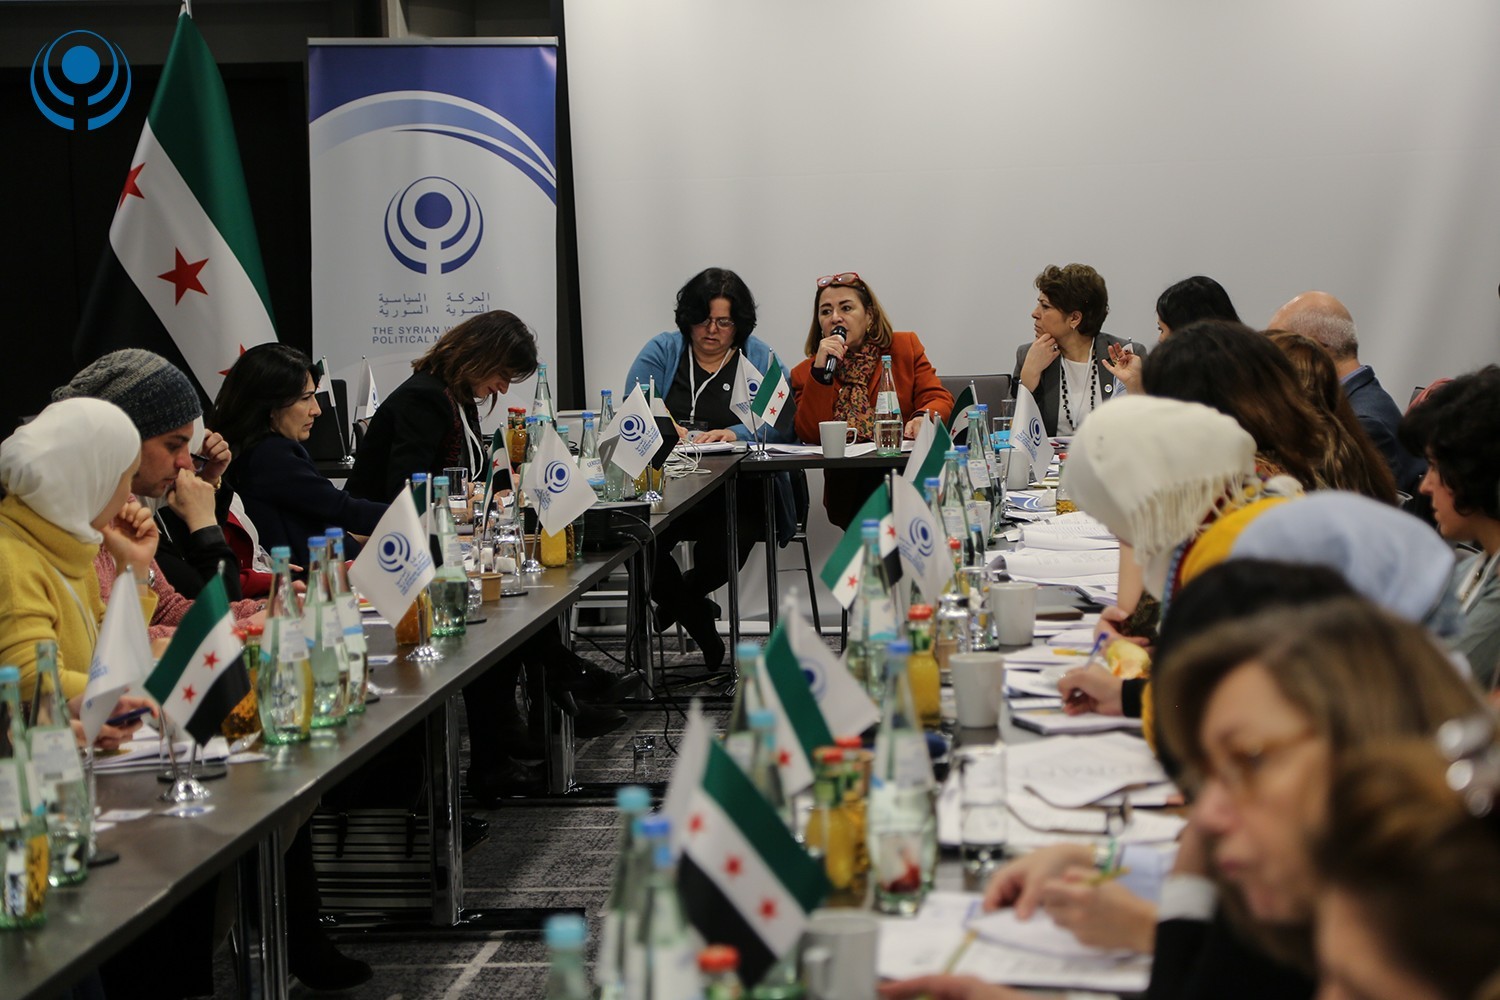 انعقاد المؤتمر الأول للهيئة العامة للحركة السياسية النسوية السورية في مدينة فرانكفورت  – ألمانيا